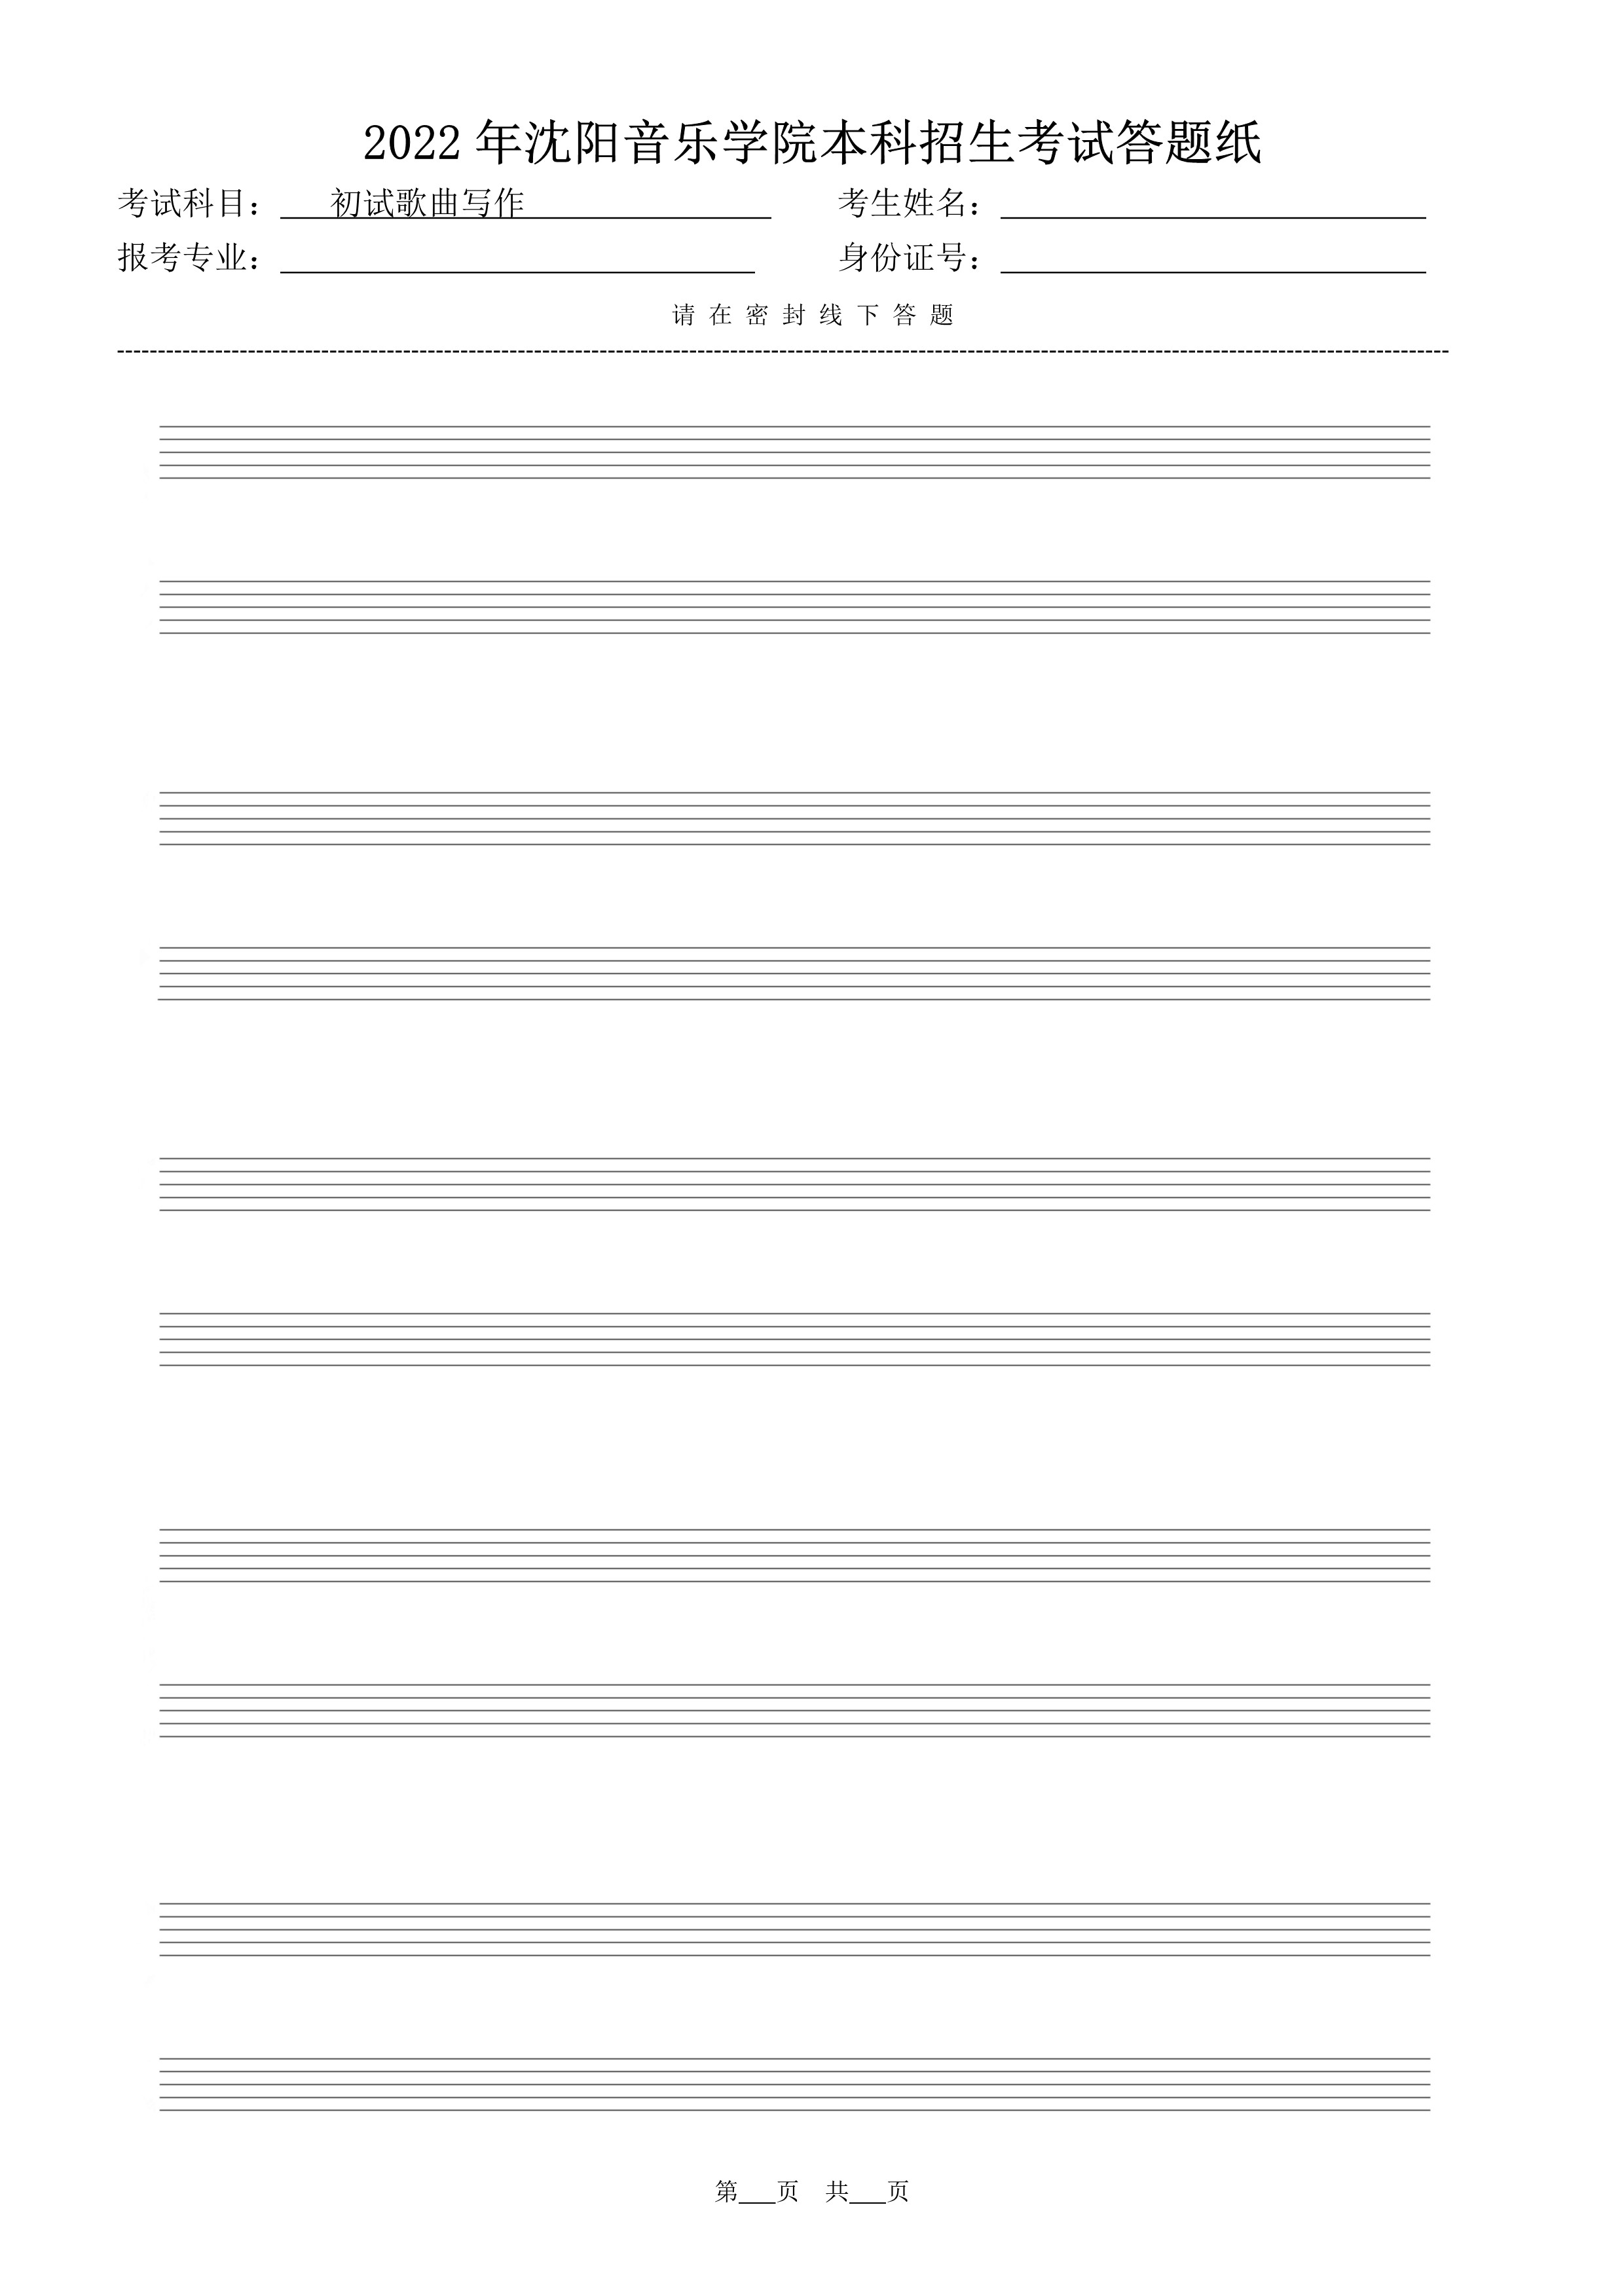 初试歌曲写作答题纸（共5页）_2.jpg